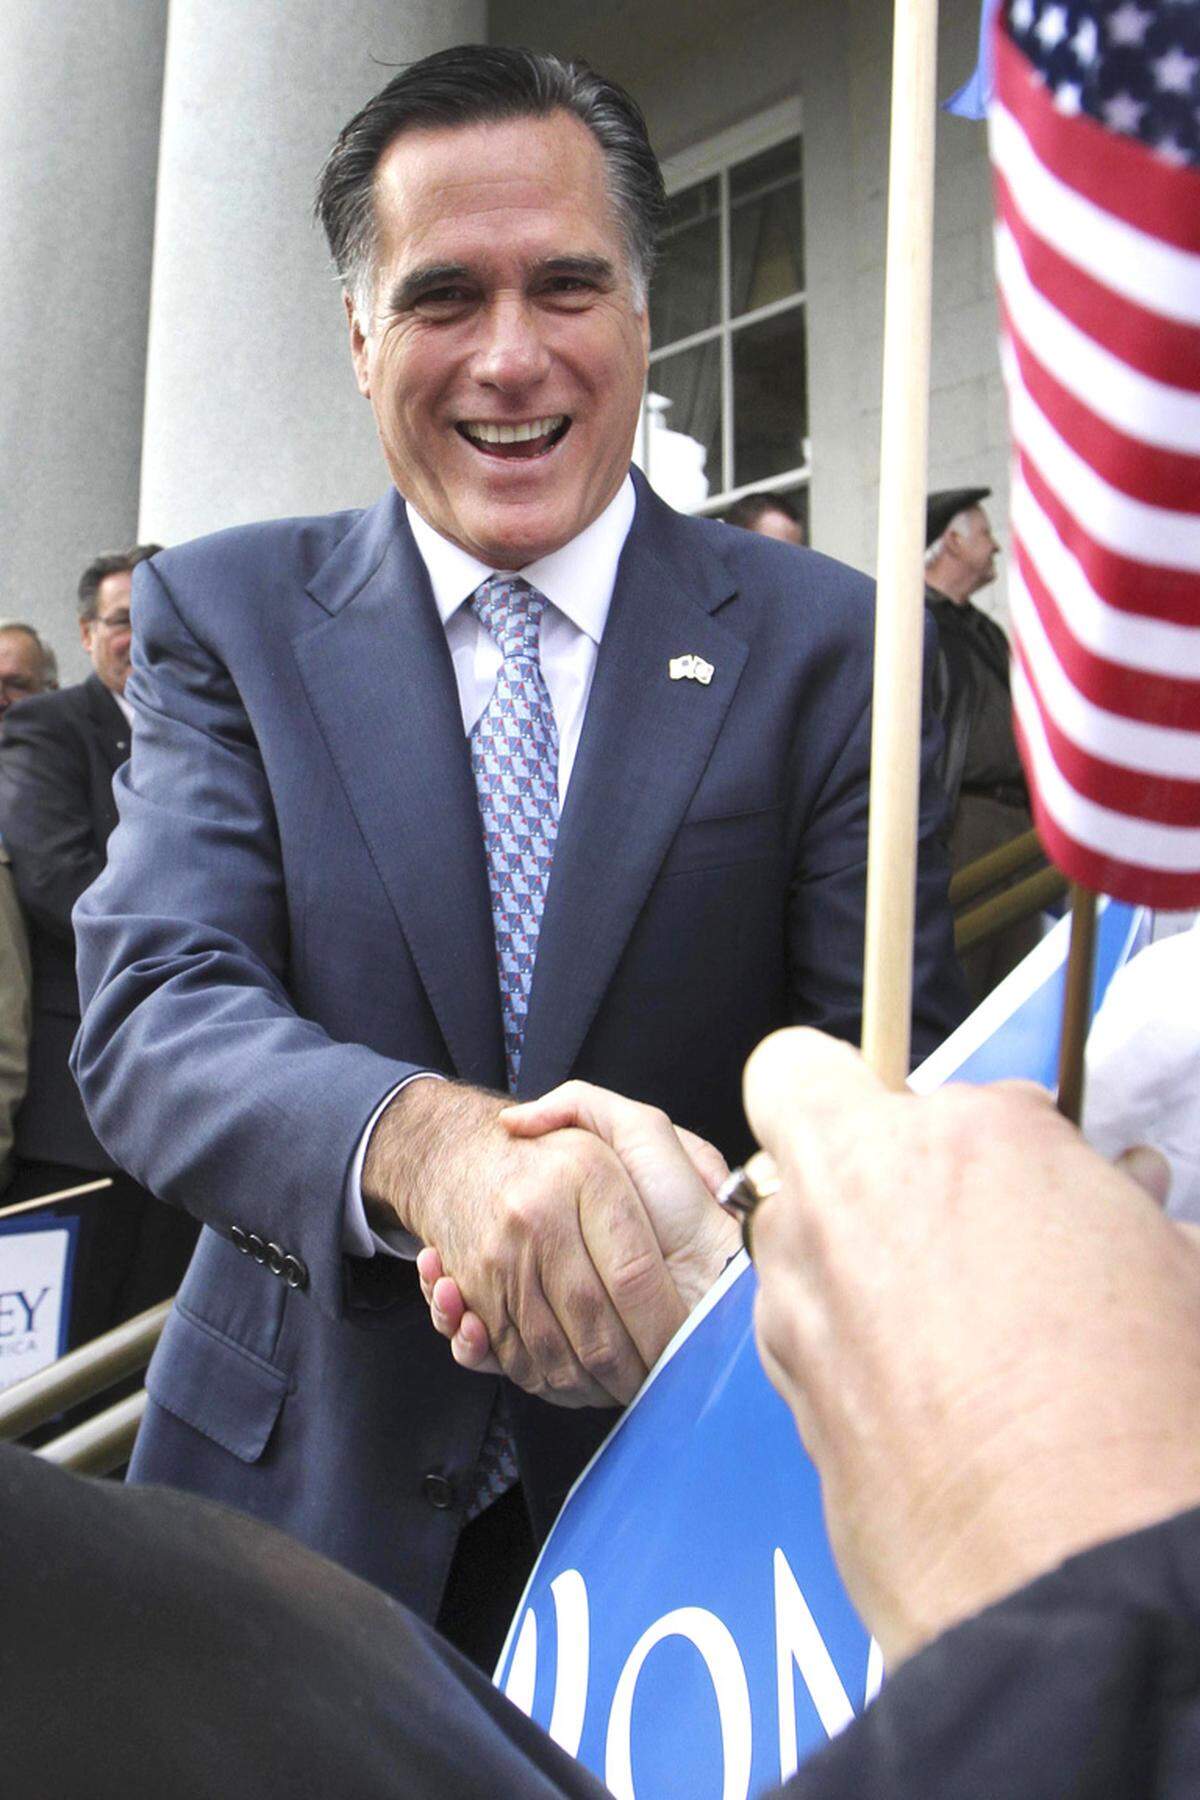 Zuletzt sandte Romney mit einer harschen Position in der Immigrationsfrage Signale nach rechts aus. Wegen seiner wechselhaften Politik gilt er vielen Konservativen freilich immer noch als windelweich und „wischiwaschi“. Vor allem die Gesundheitsreform, die er in Massachusetts durchgesetzt hat, macht ihn für sie verdächtig.